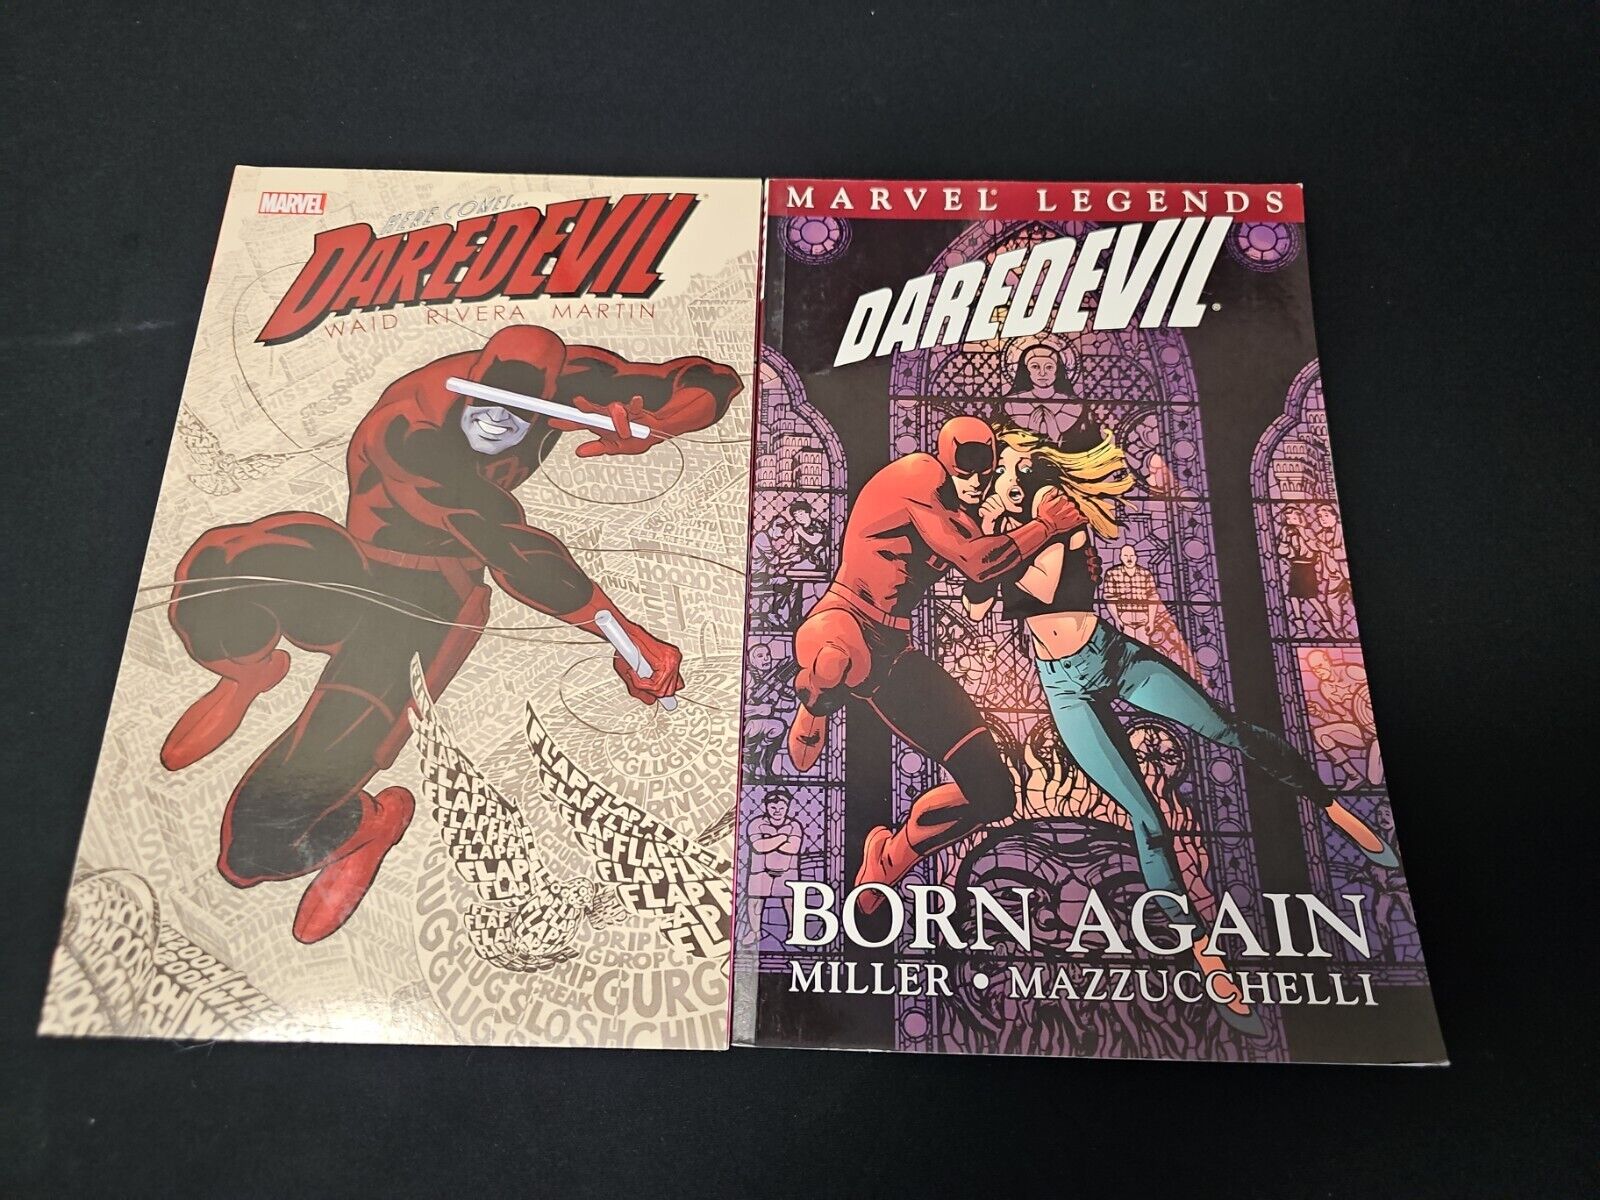 Marvel Here Comes Daredevil 1 - 2015 Paperback Waid Rivera Martin + Born Again 